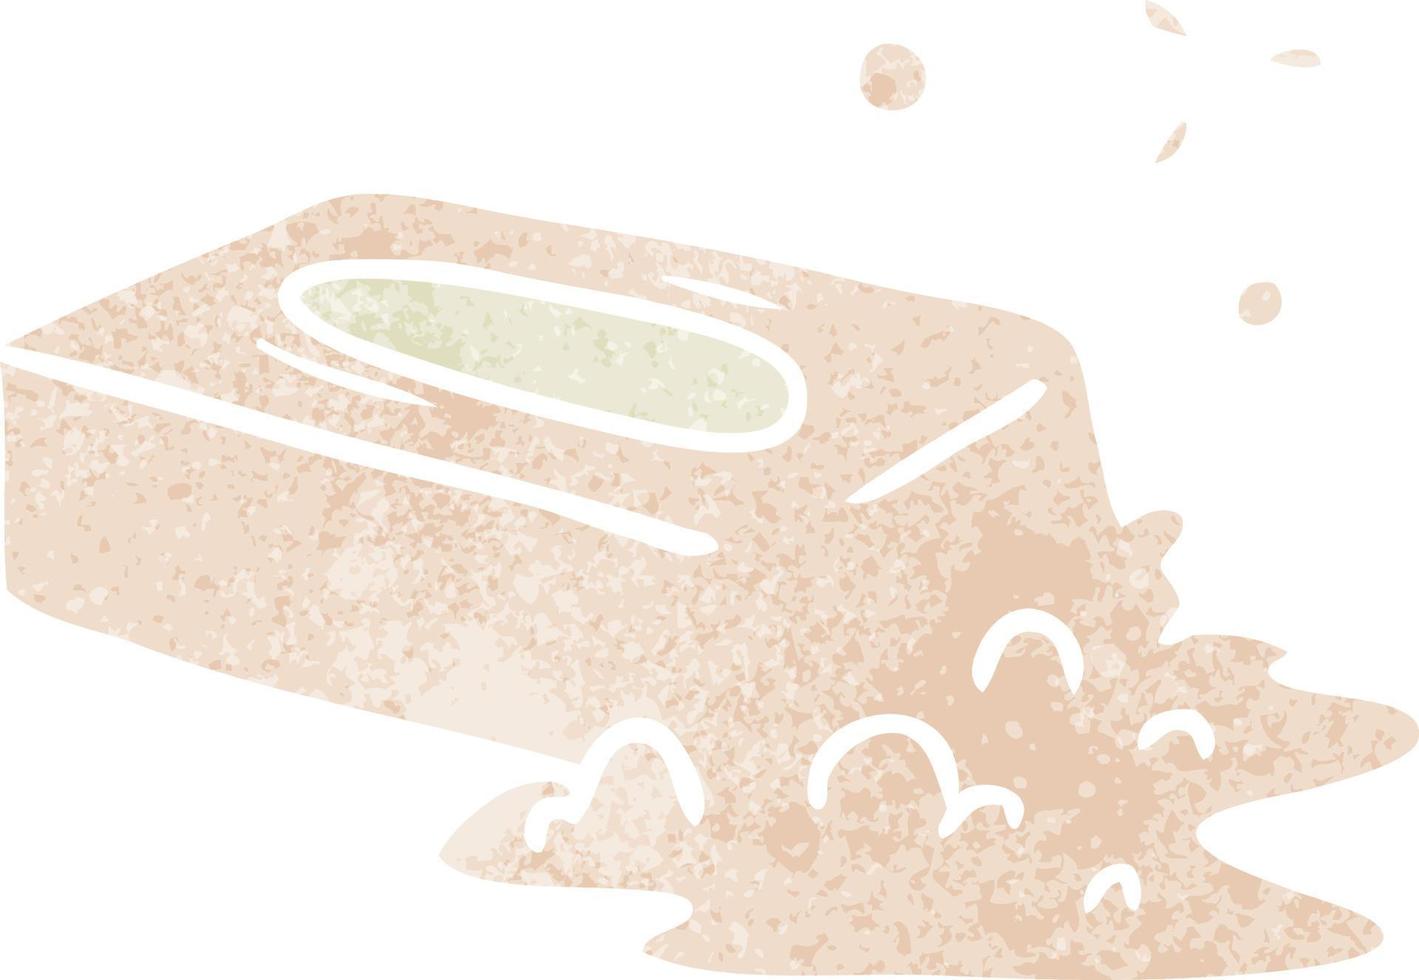 doodle cartoon retrô de um sabonete borbulhado vetor